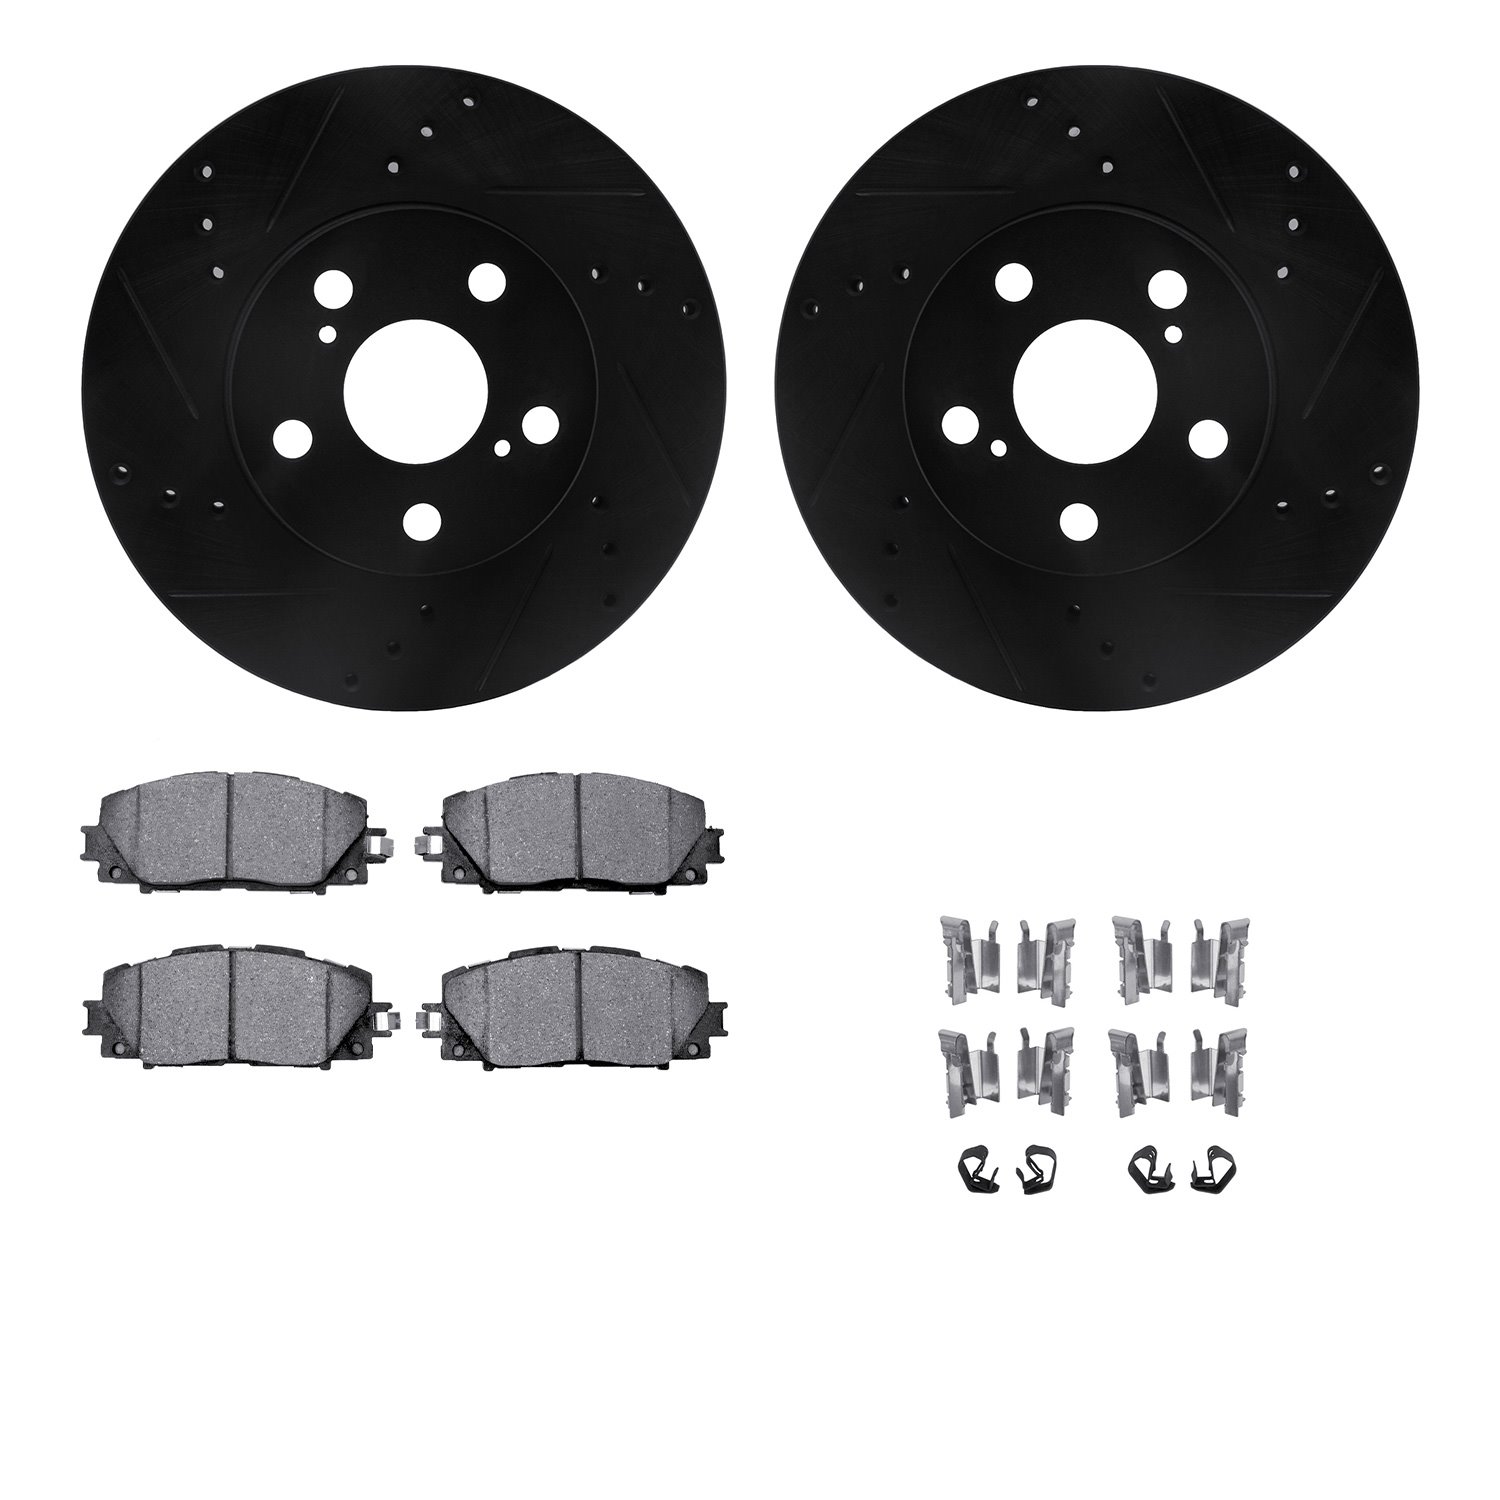 8312-76155 Drilled/Slotted Brake Rotors with 3000-Series Ceramic Brake Pads Kit & Hardware [Black], 2010-2017 Lexus/Toyota/Scion